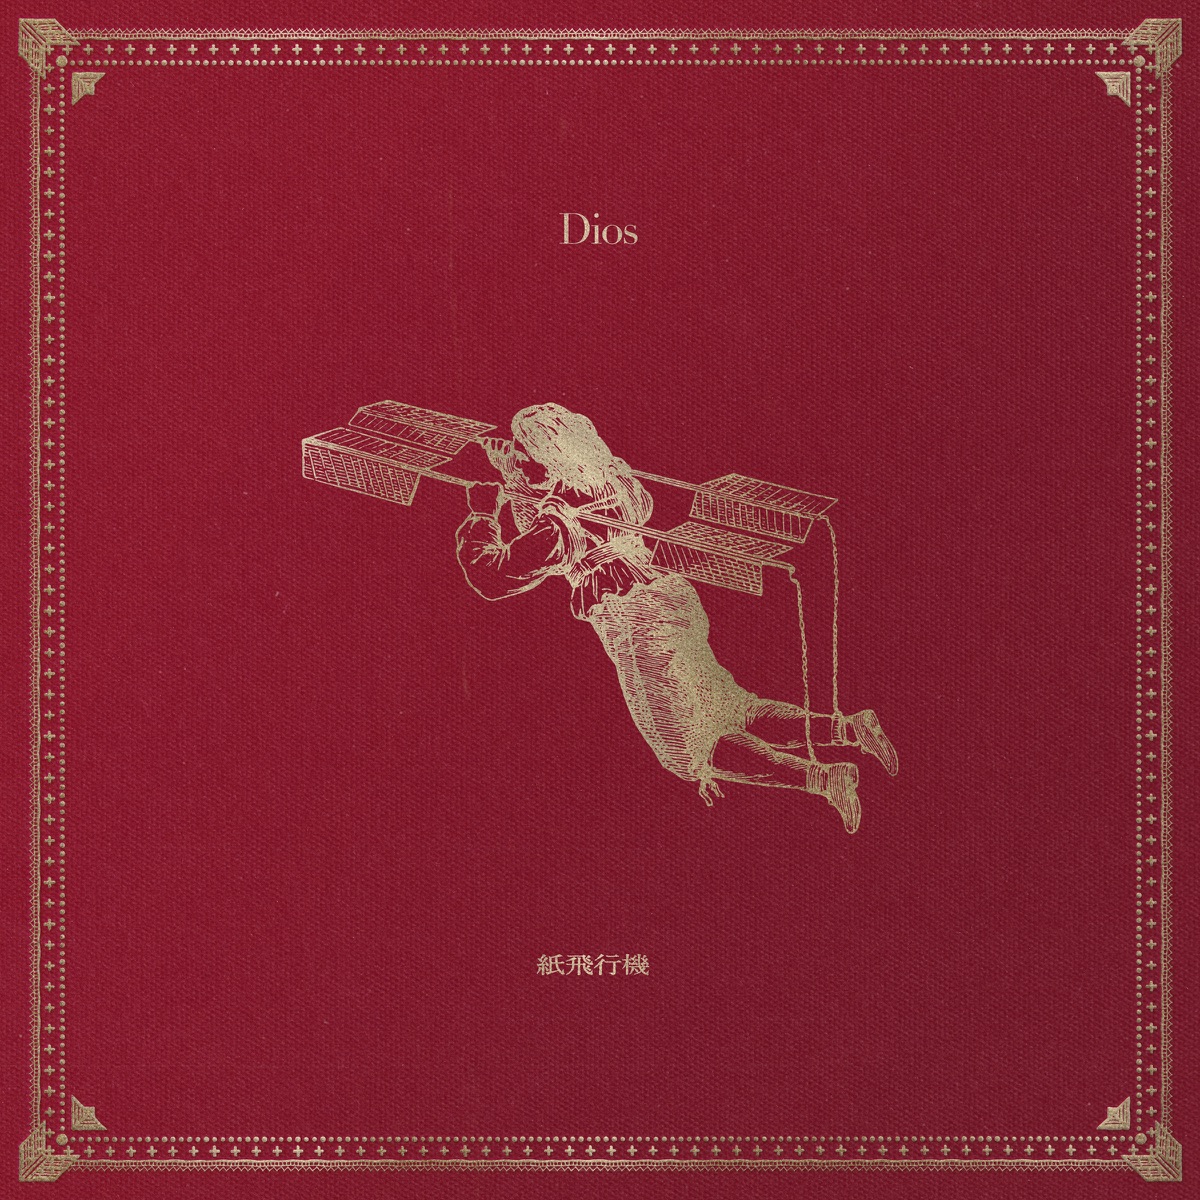 『Dios - 紙飛行機』収録の『紙飛行機』ジャケット